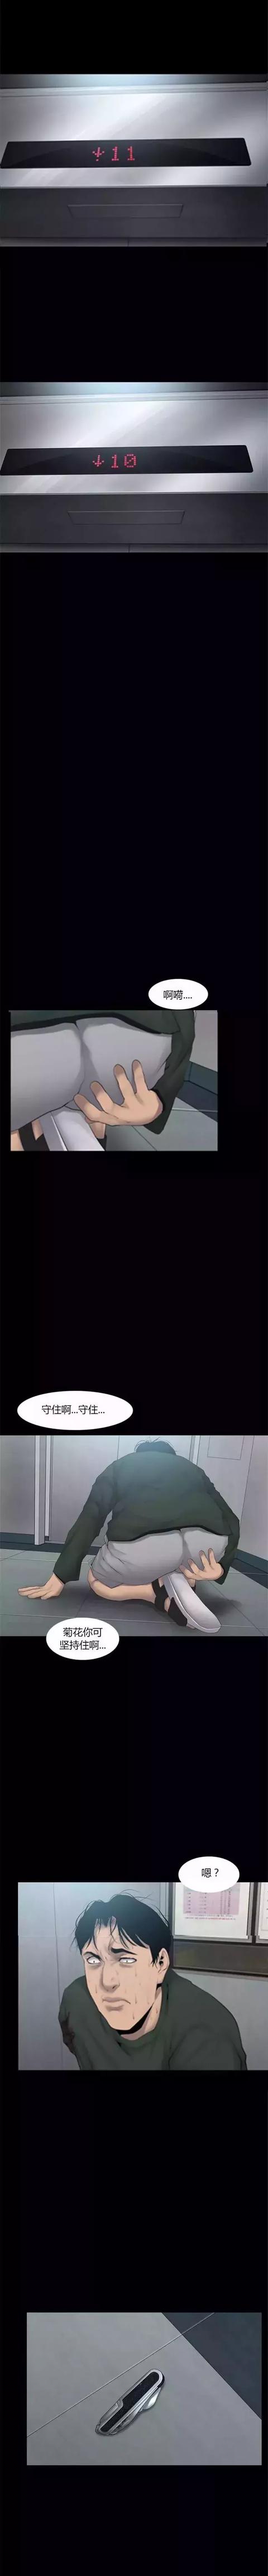 韩国午夜漫画《电梯惊魂》，真是令人作呕的死法